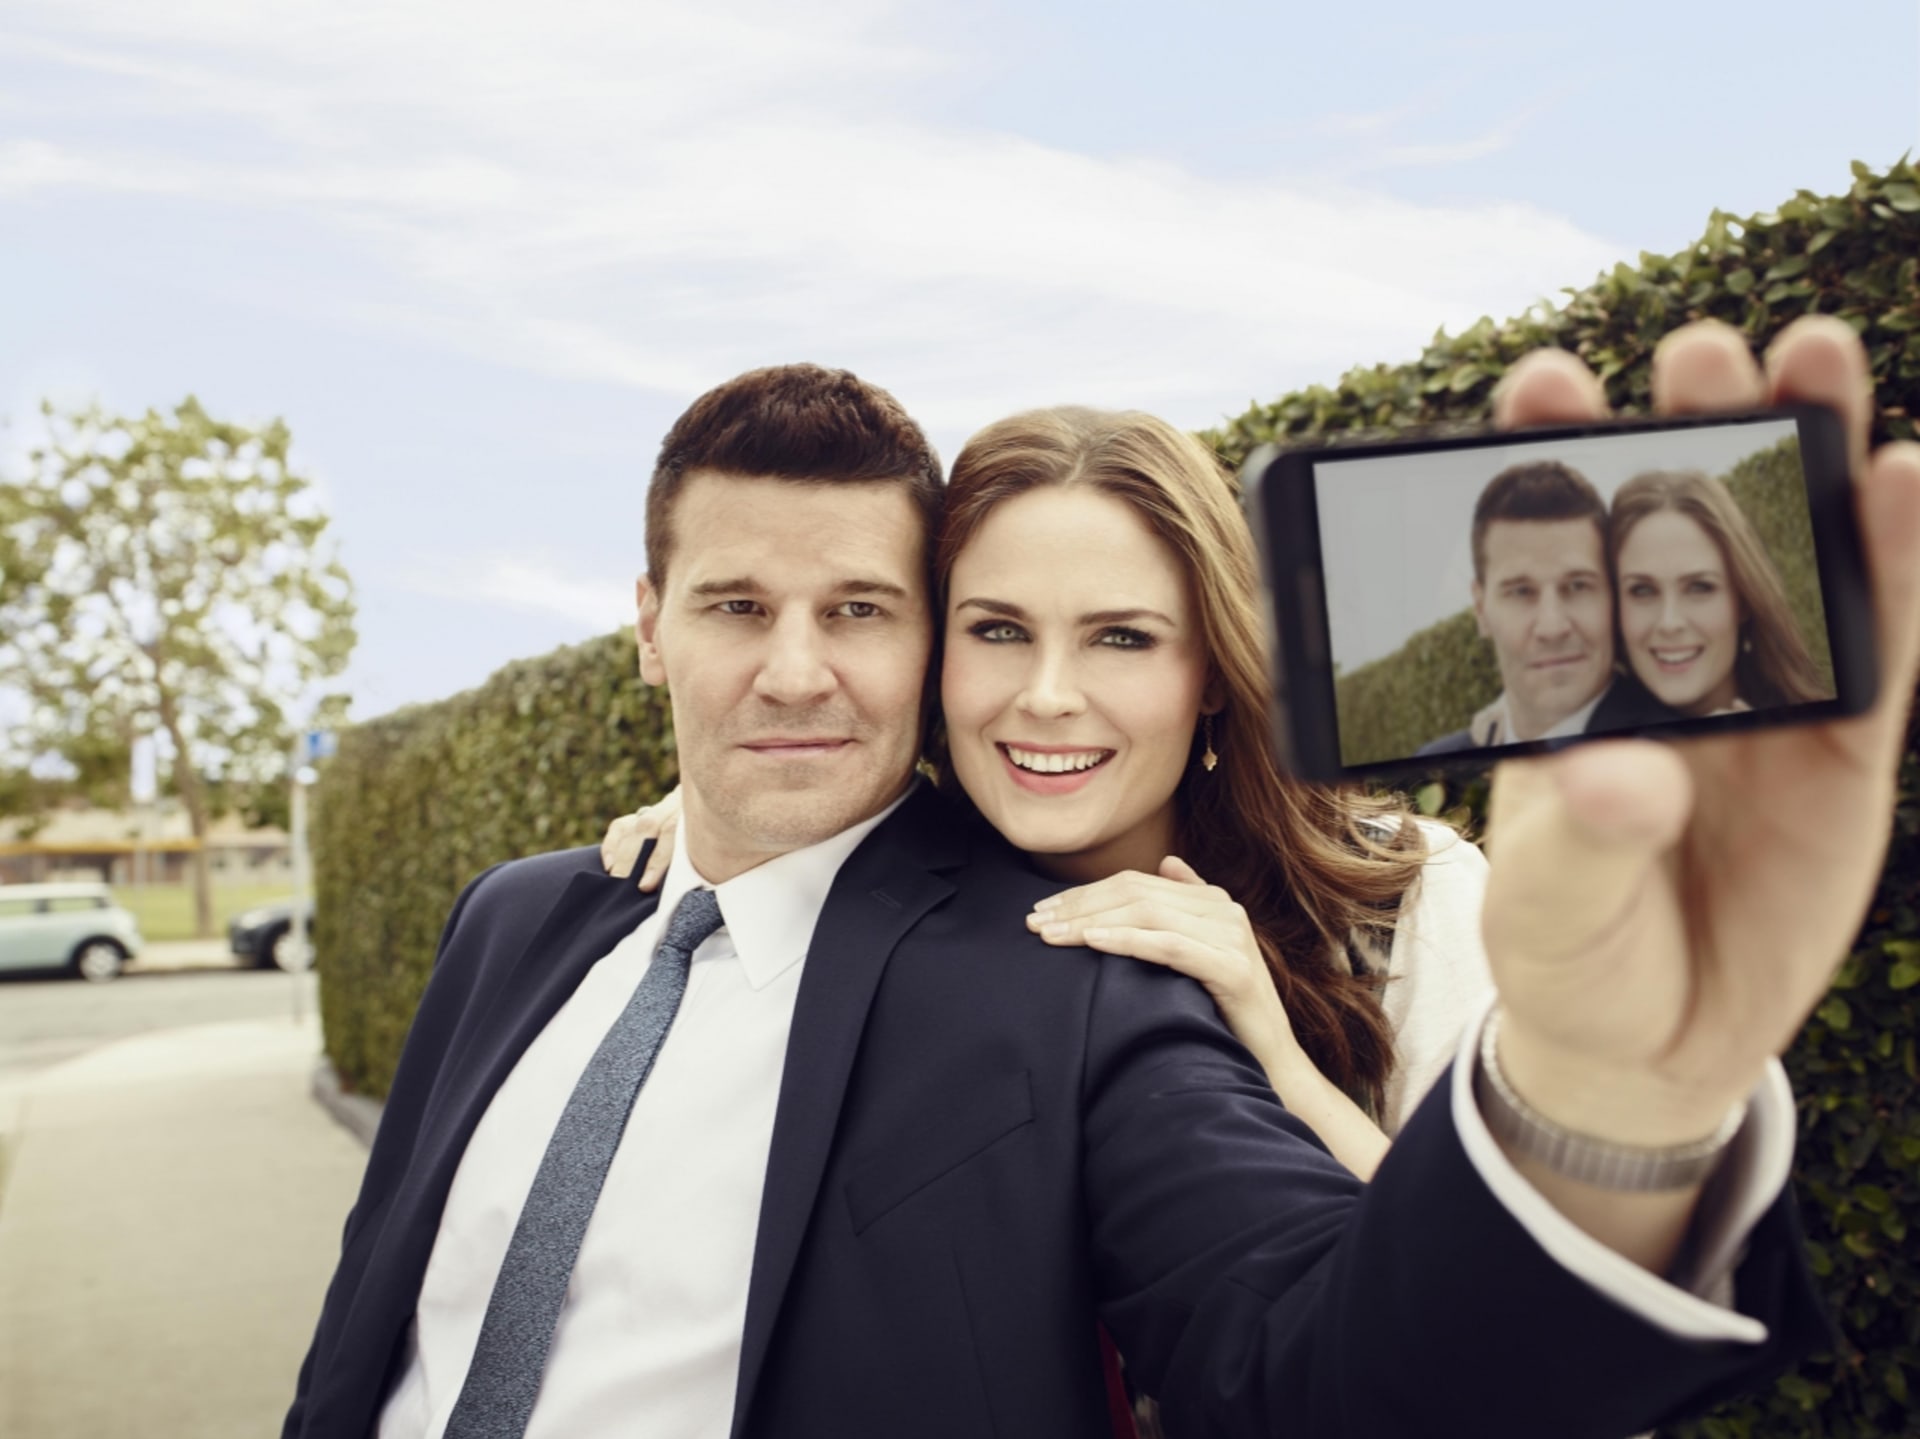 Sběratelé s kostí - Kůstka a Booth selfie